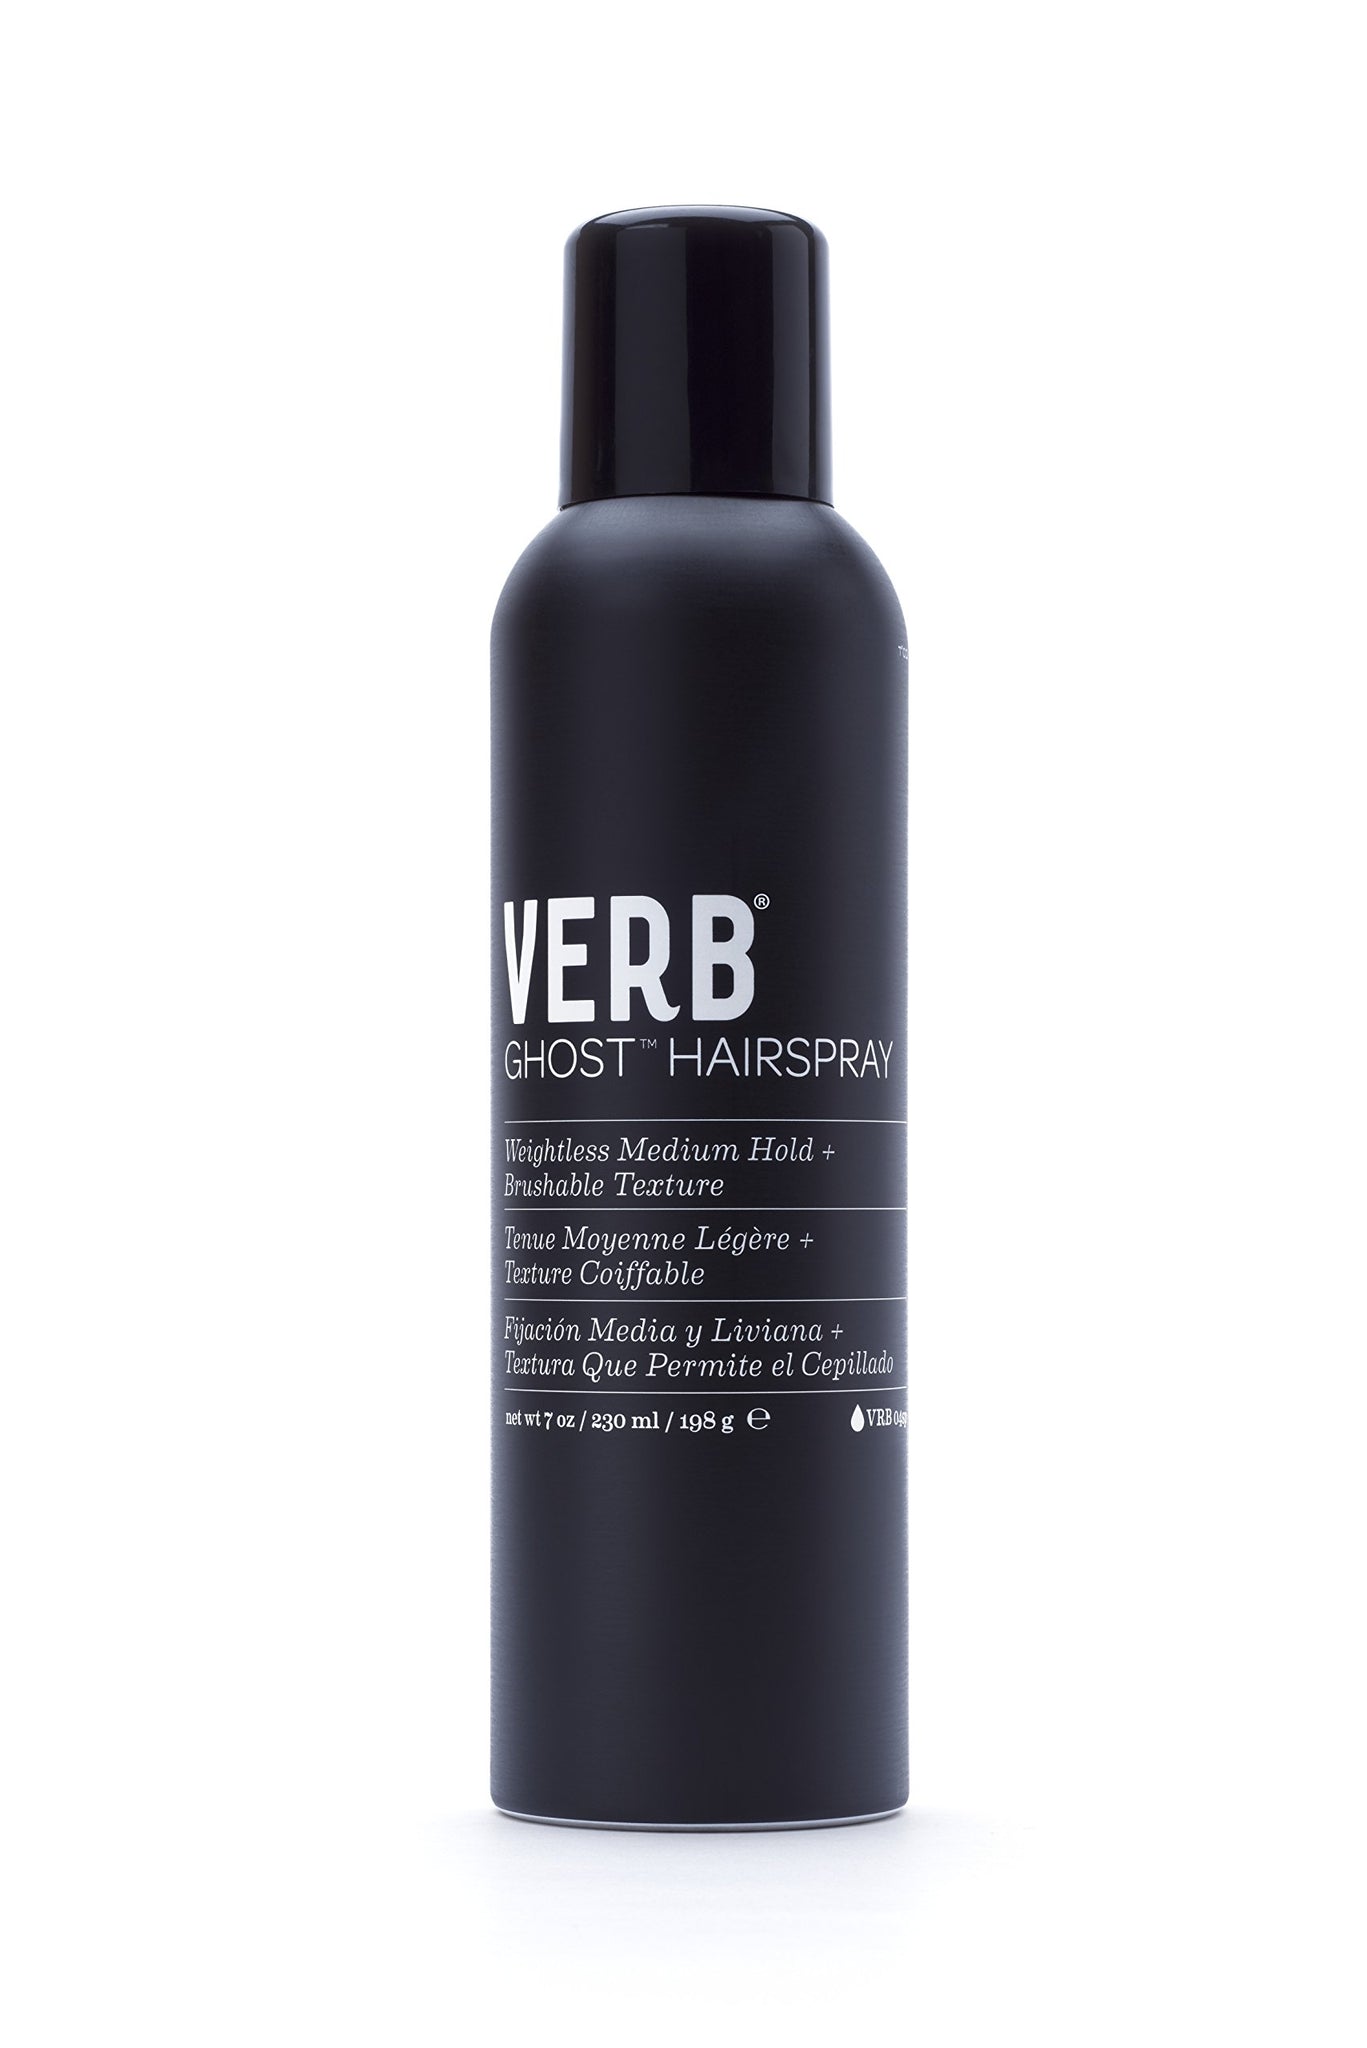 VERB Ghost™ Hairspray